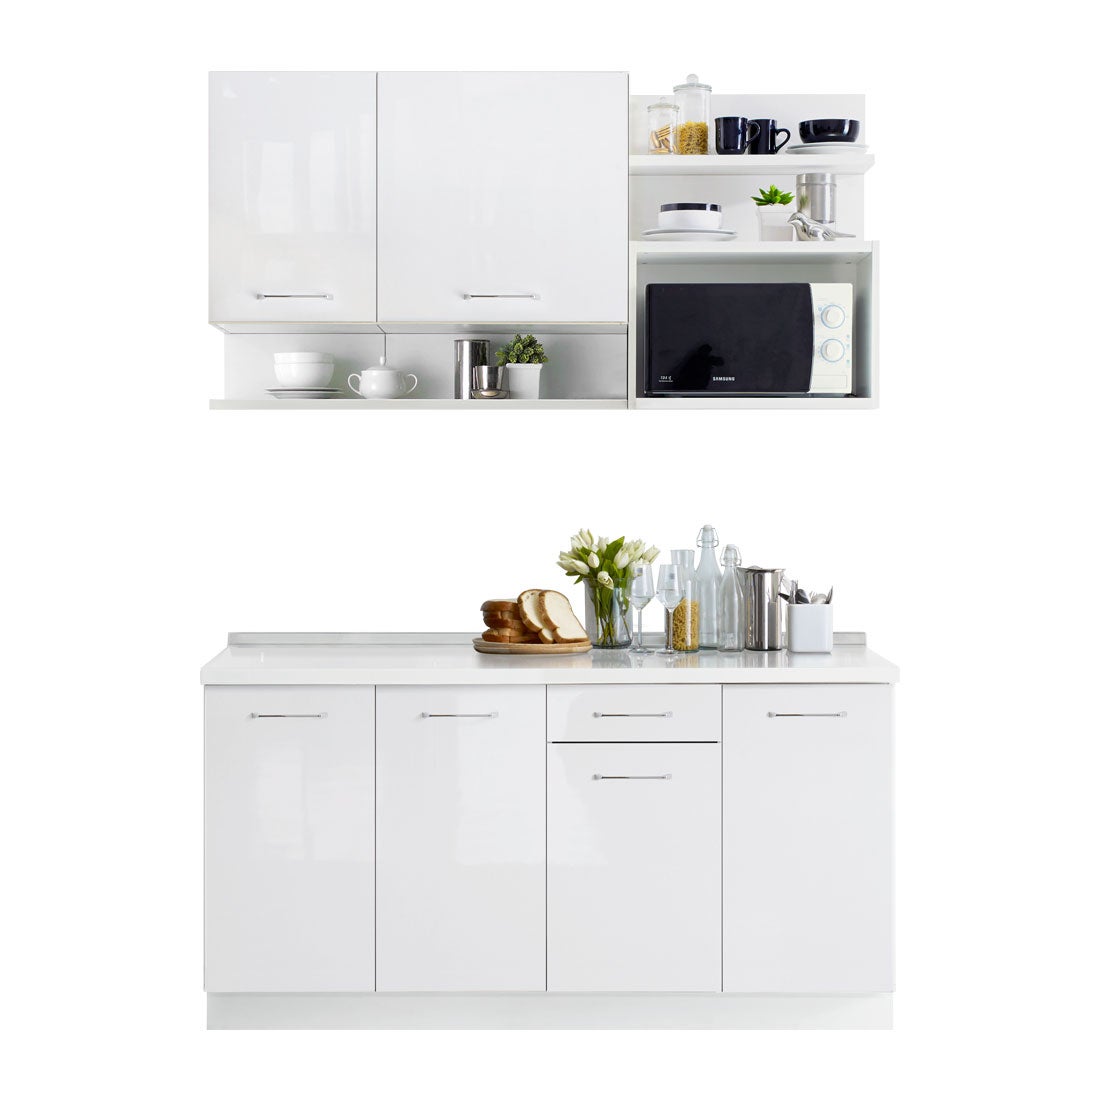 ห้องครัวขนาดกะทัดรัดและครัวสำเร็จรูป ขนาด 160 ซม. รุ่น Kourmet สีขาว01